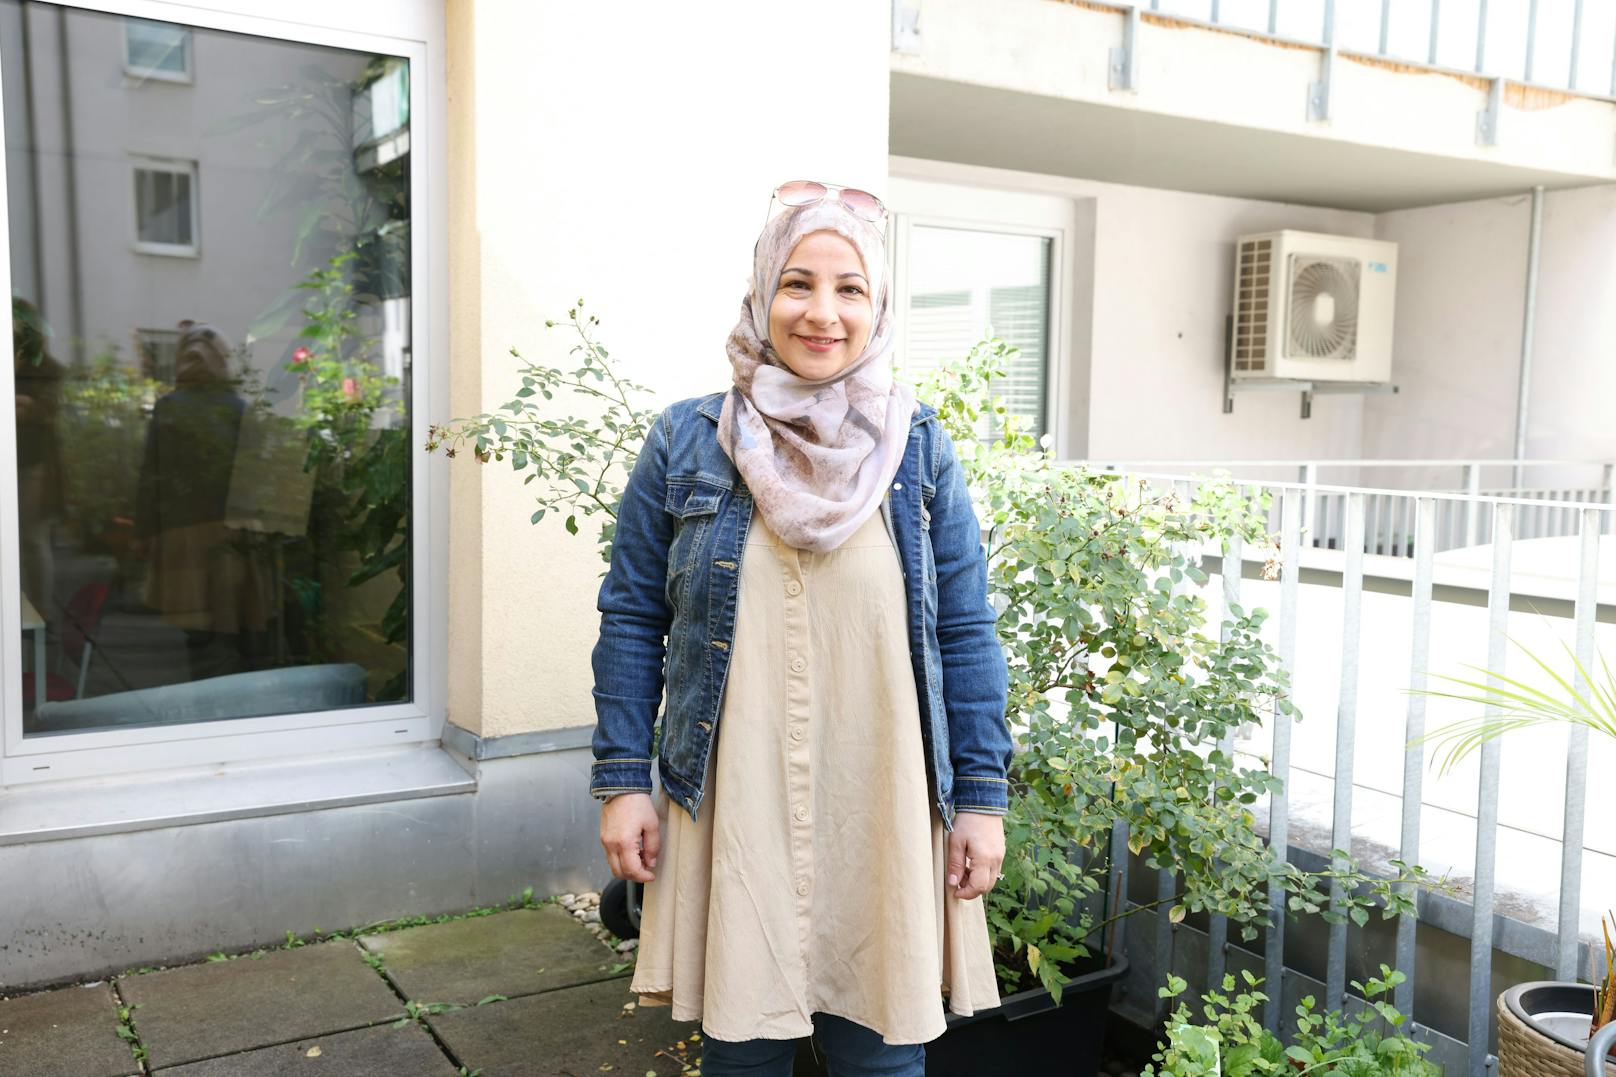 Vor allem für Migranten bedeutet die Frage "Impfung ja oder nein" viel Unsicherheit. Um hier in der jeweiligen Muttersprache zu beraten, sind in Wien derzeit rund 60 Gesundheitslots*innen unterwegs. <em>"Heute"</em> hat mit Fatima Keblawi (40) eine zum Gespräch getroffen.